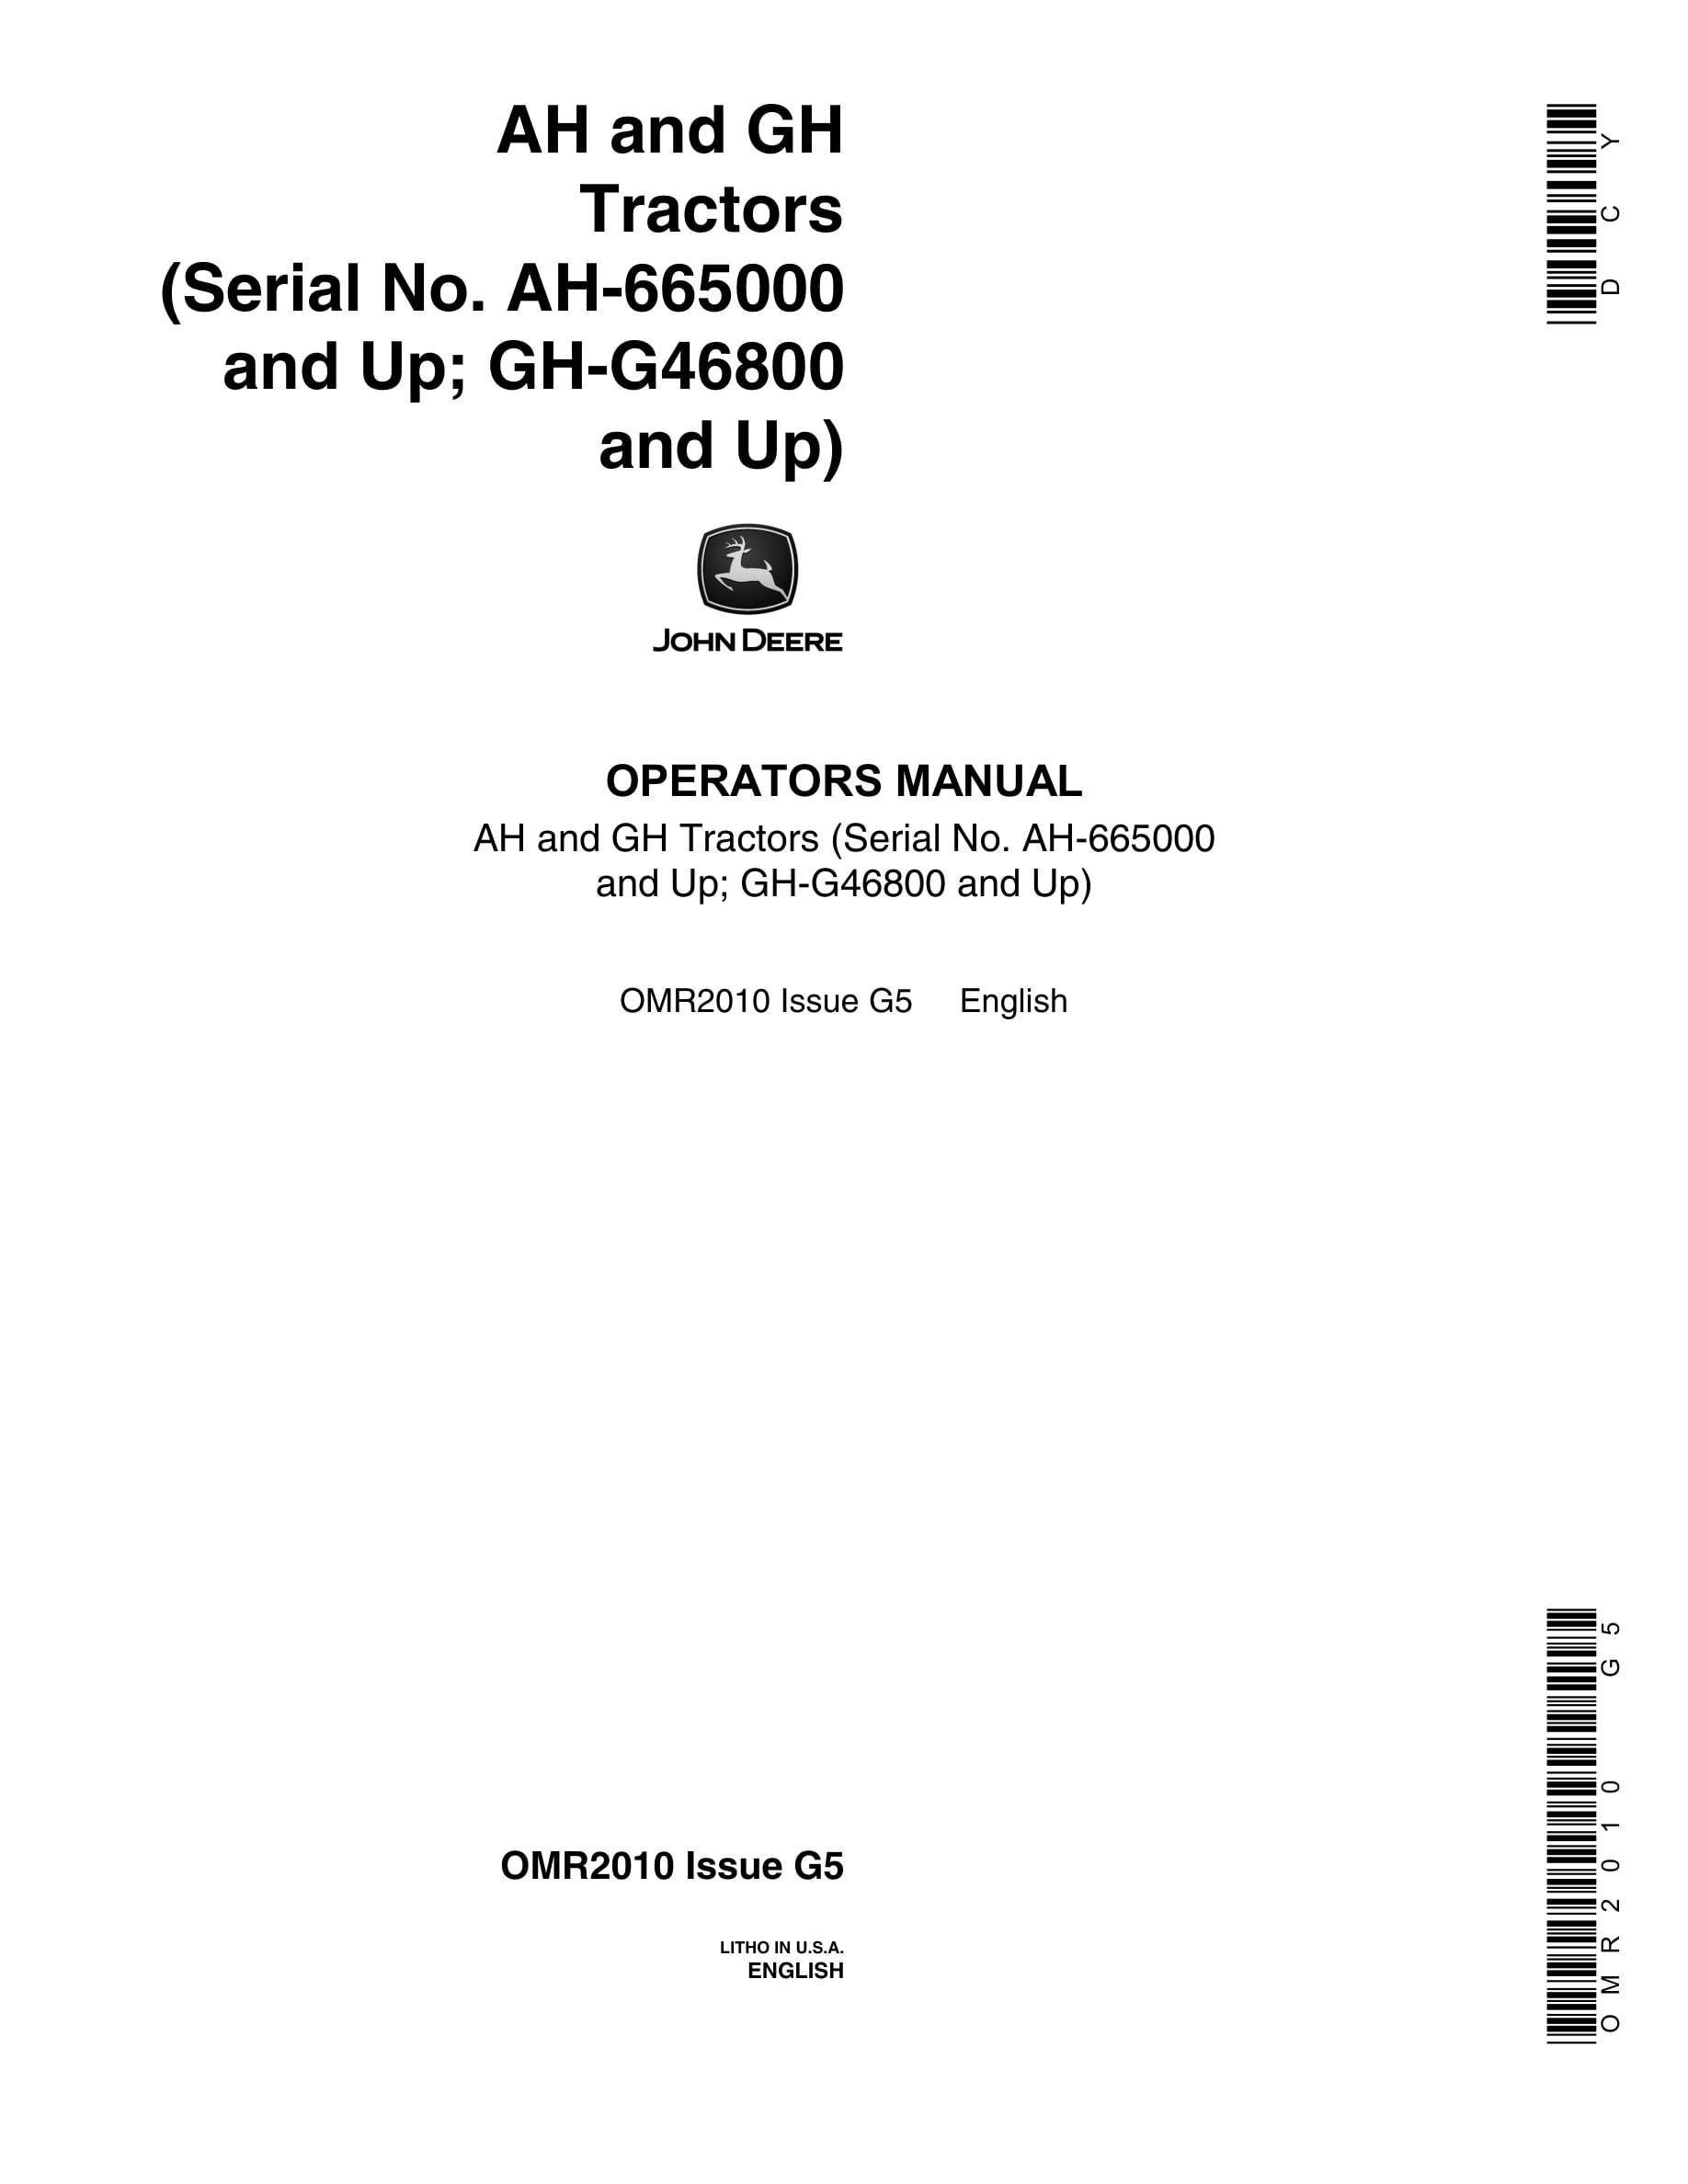 John Deere AH and GH Tractor Operator Manual OMR2010-1